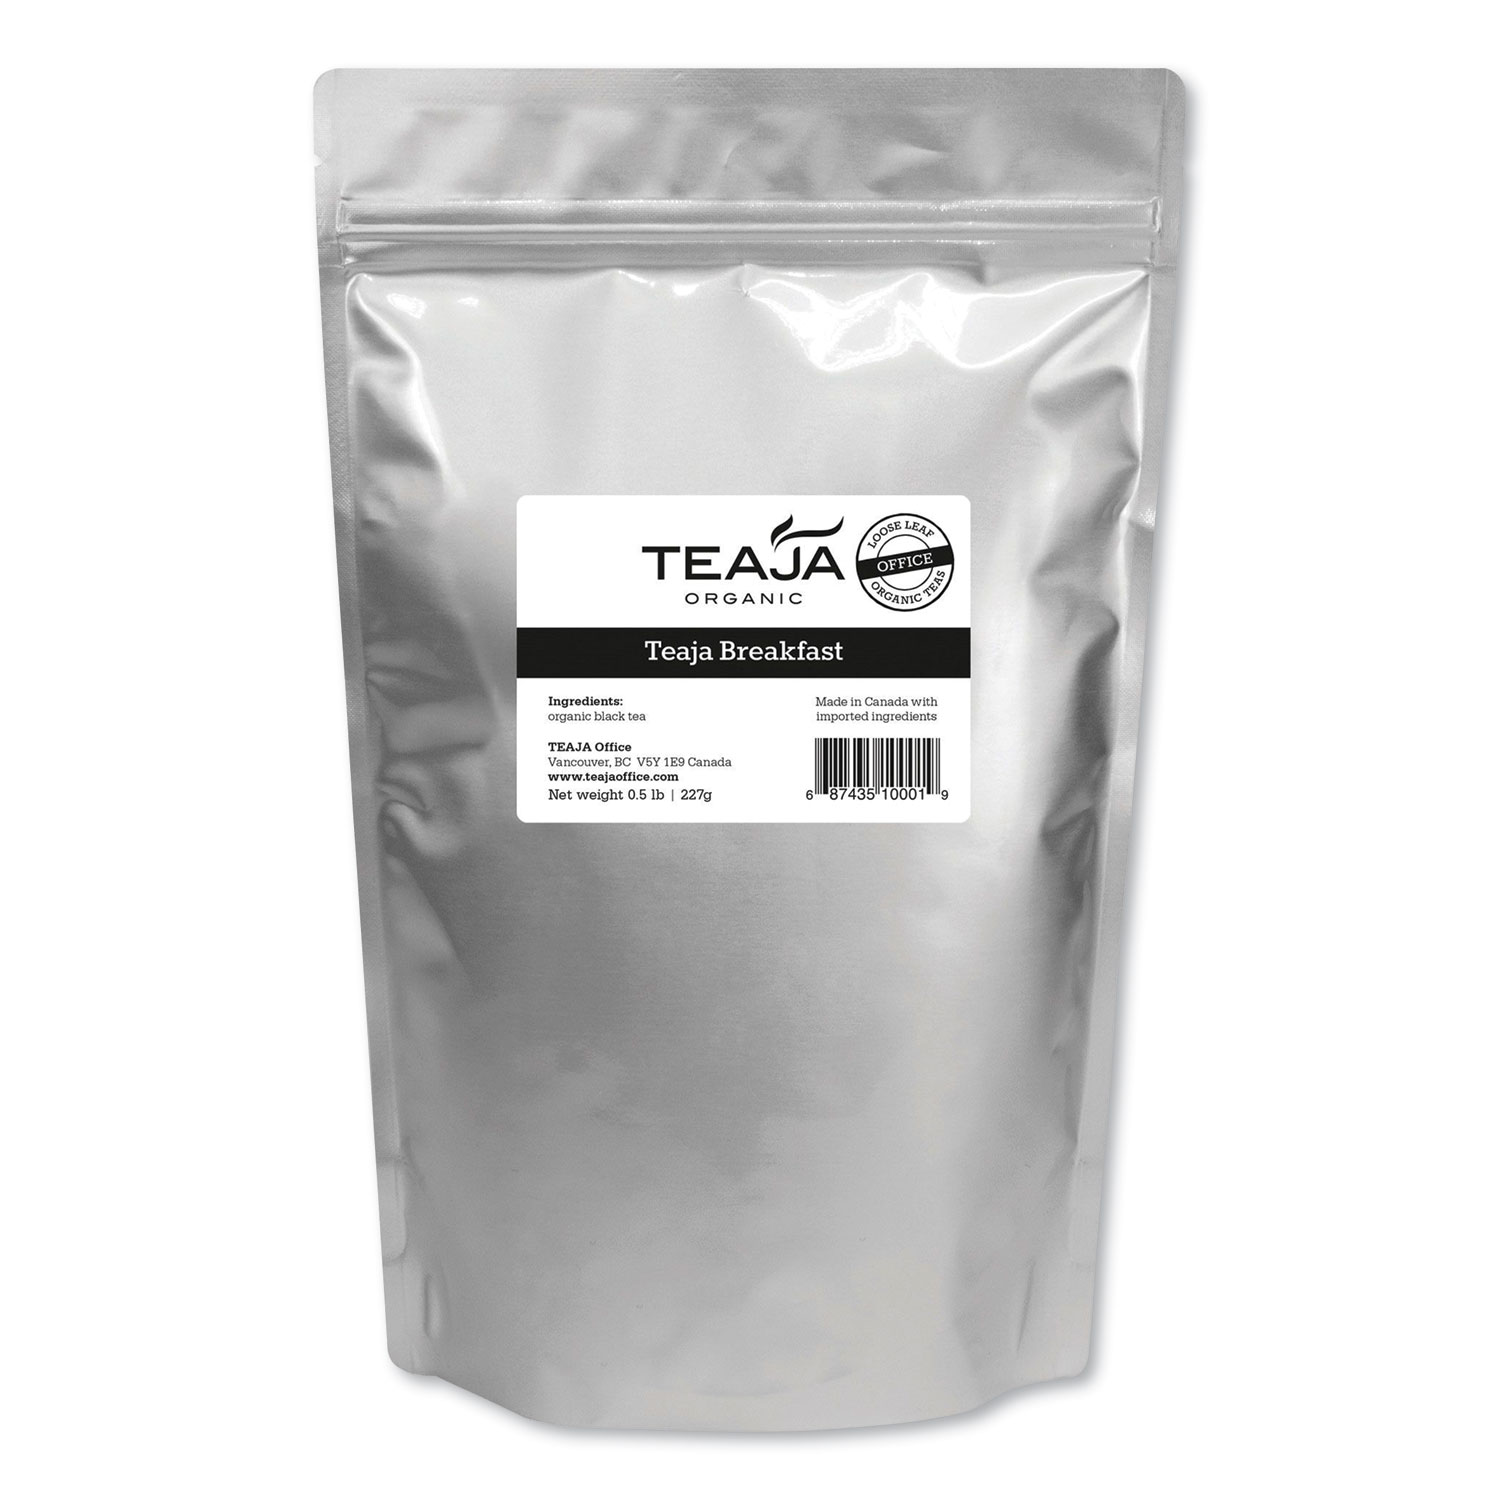  Teaja TEA10101 Organic Loose-Leaf Tea, Breakfast Blend, 1.76 oz Package (TJA2723604) 